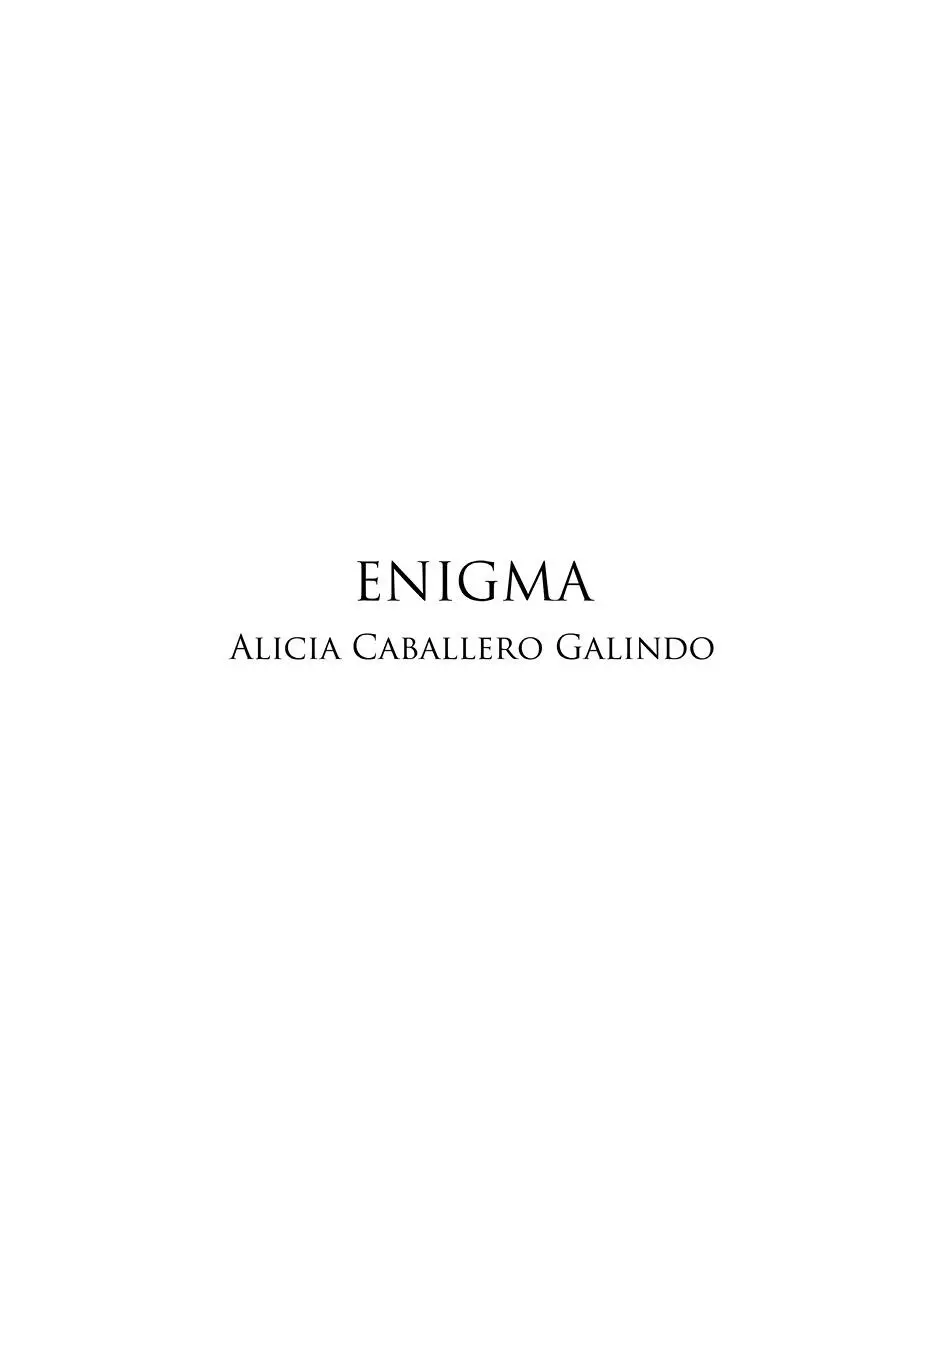 ENIGMA DR Quintanilla Ediciones Alicia Caballero Galindo Primera edición - фото 1